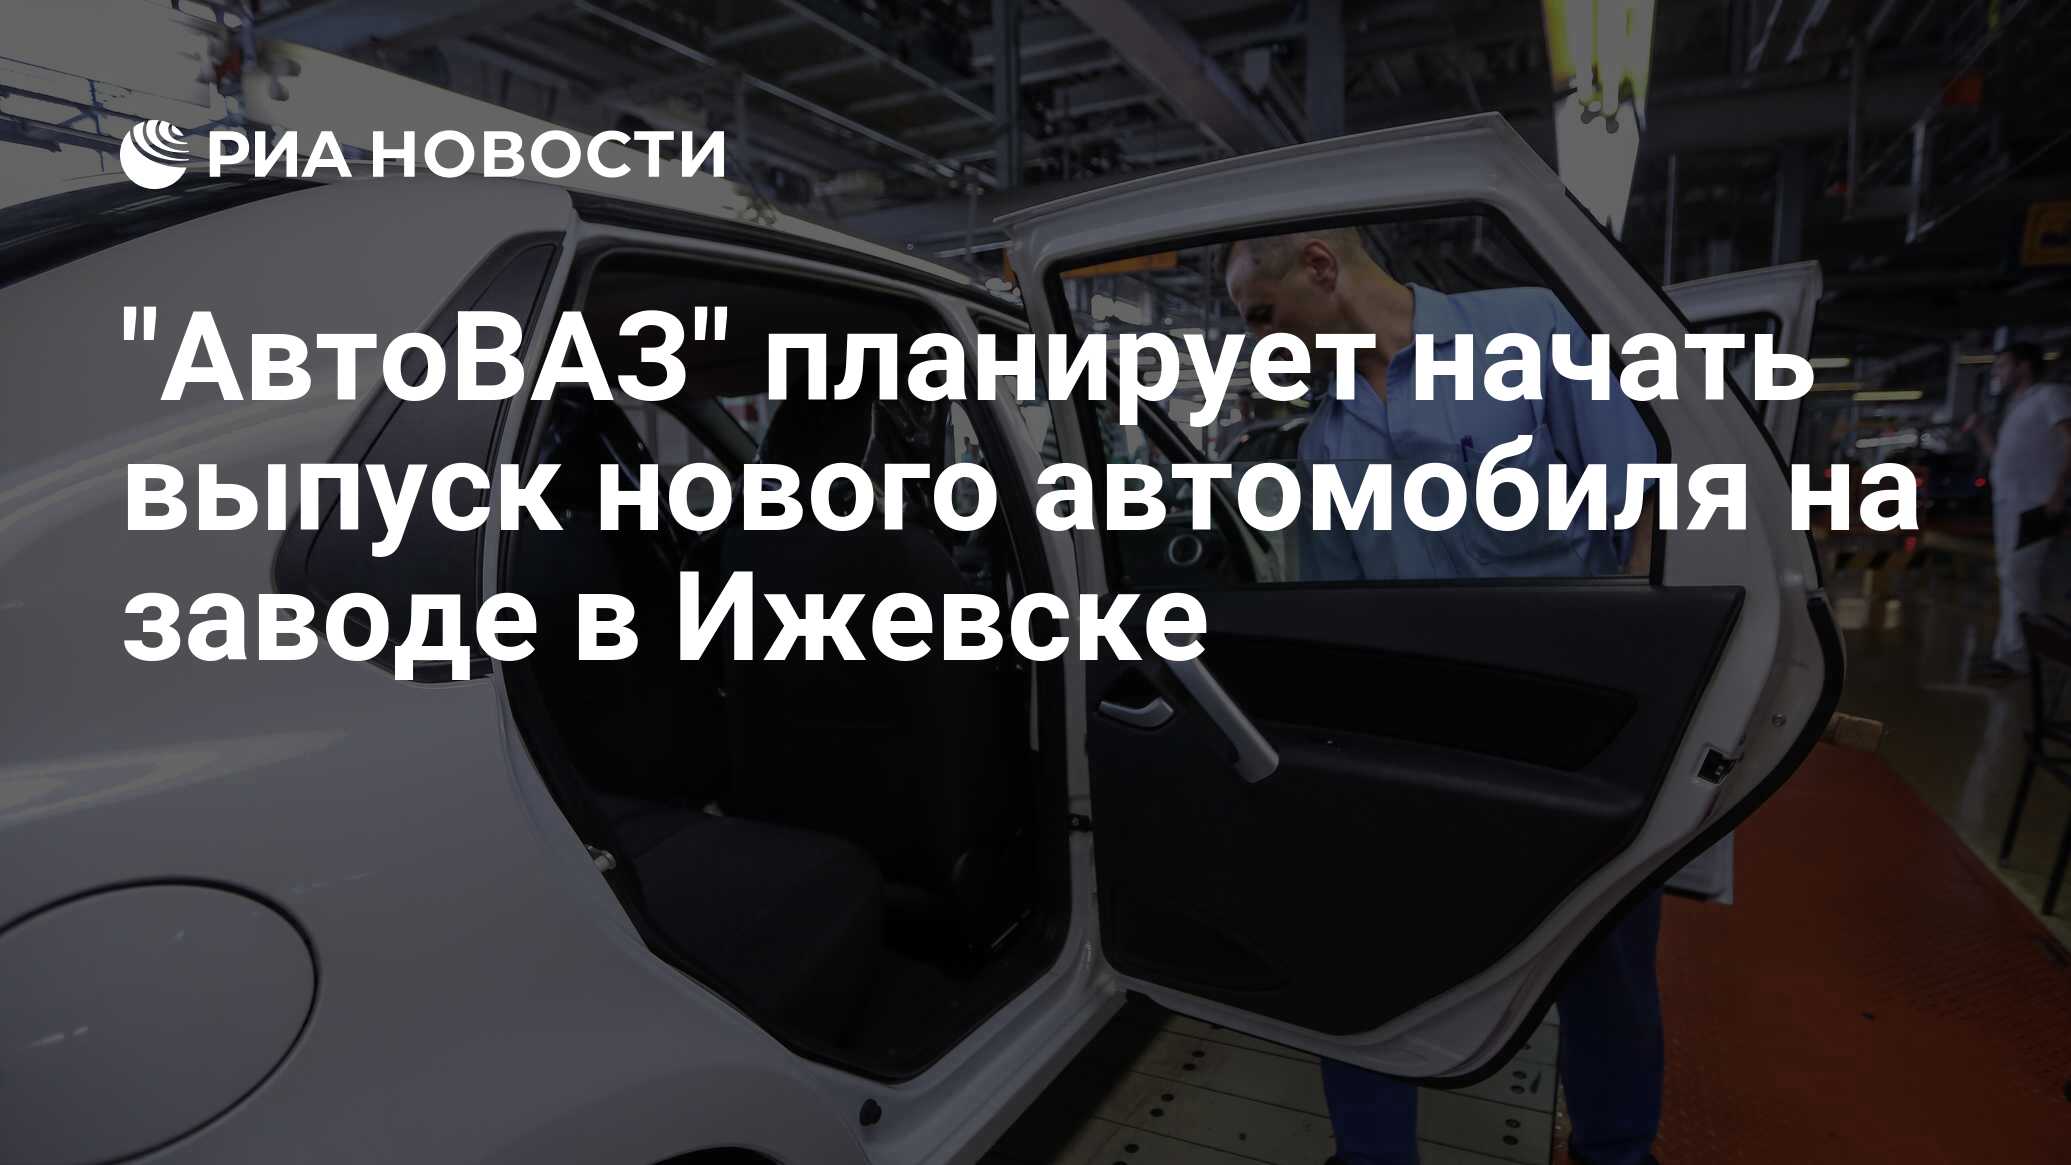 Минпромторг в россии разработал новую программу перевода автомобилей на газ